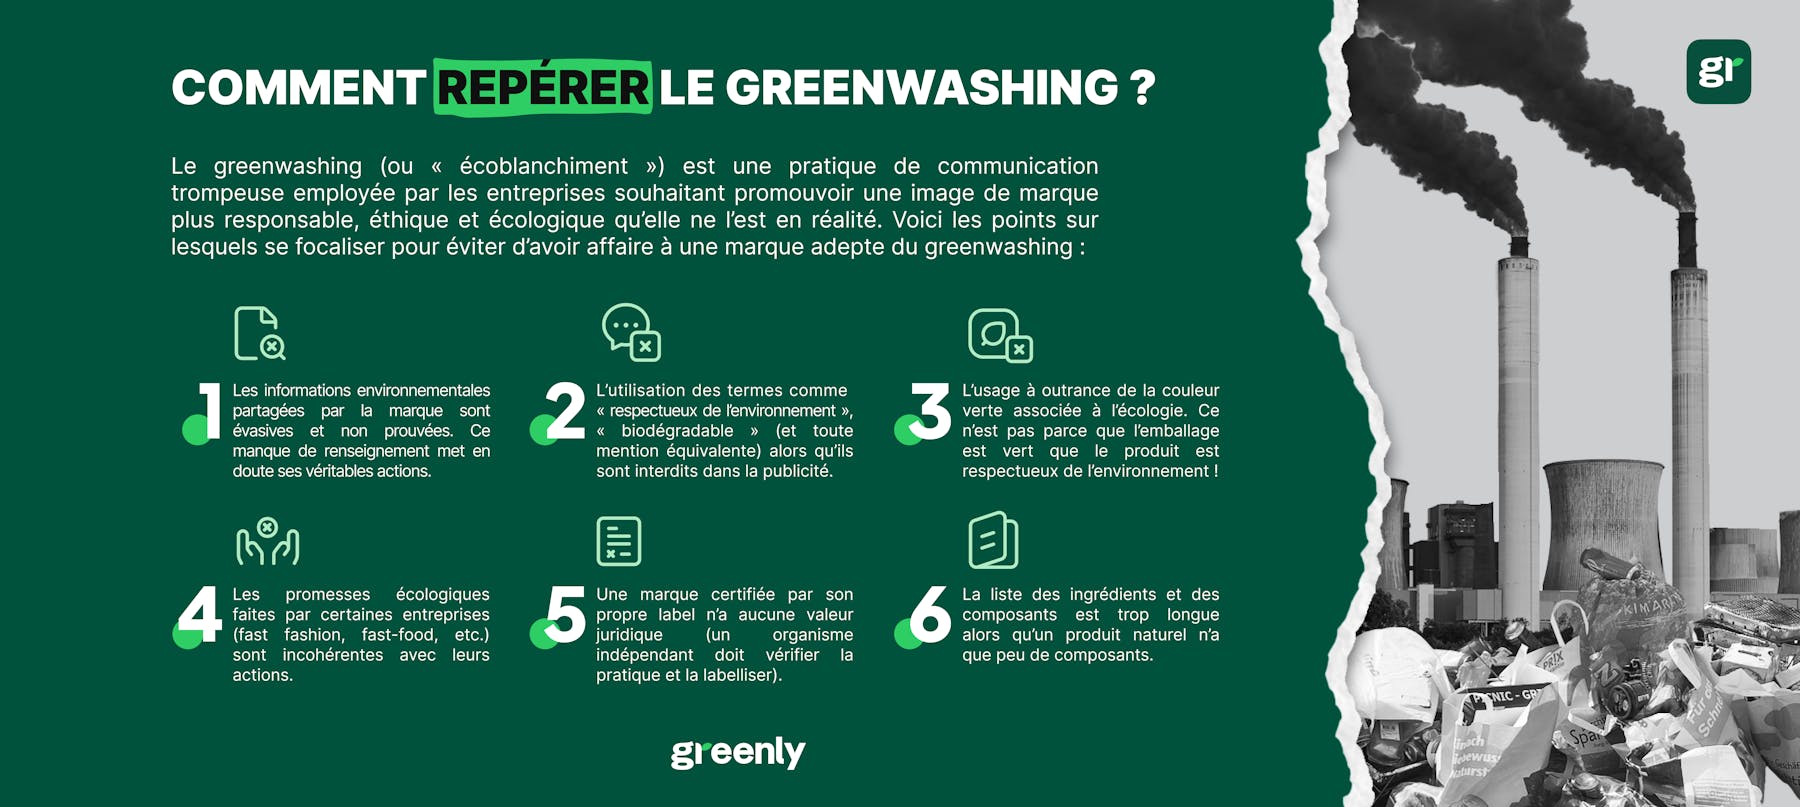 Infographie pour répérer le greenwashing